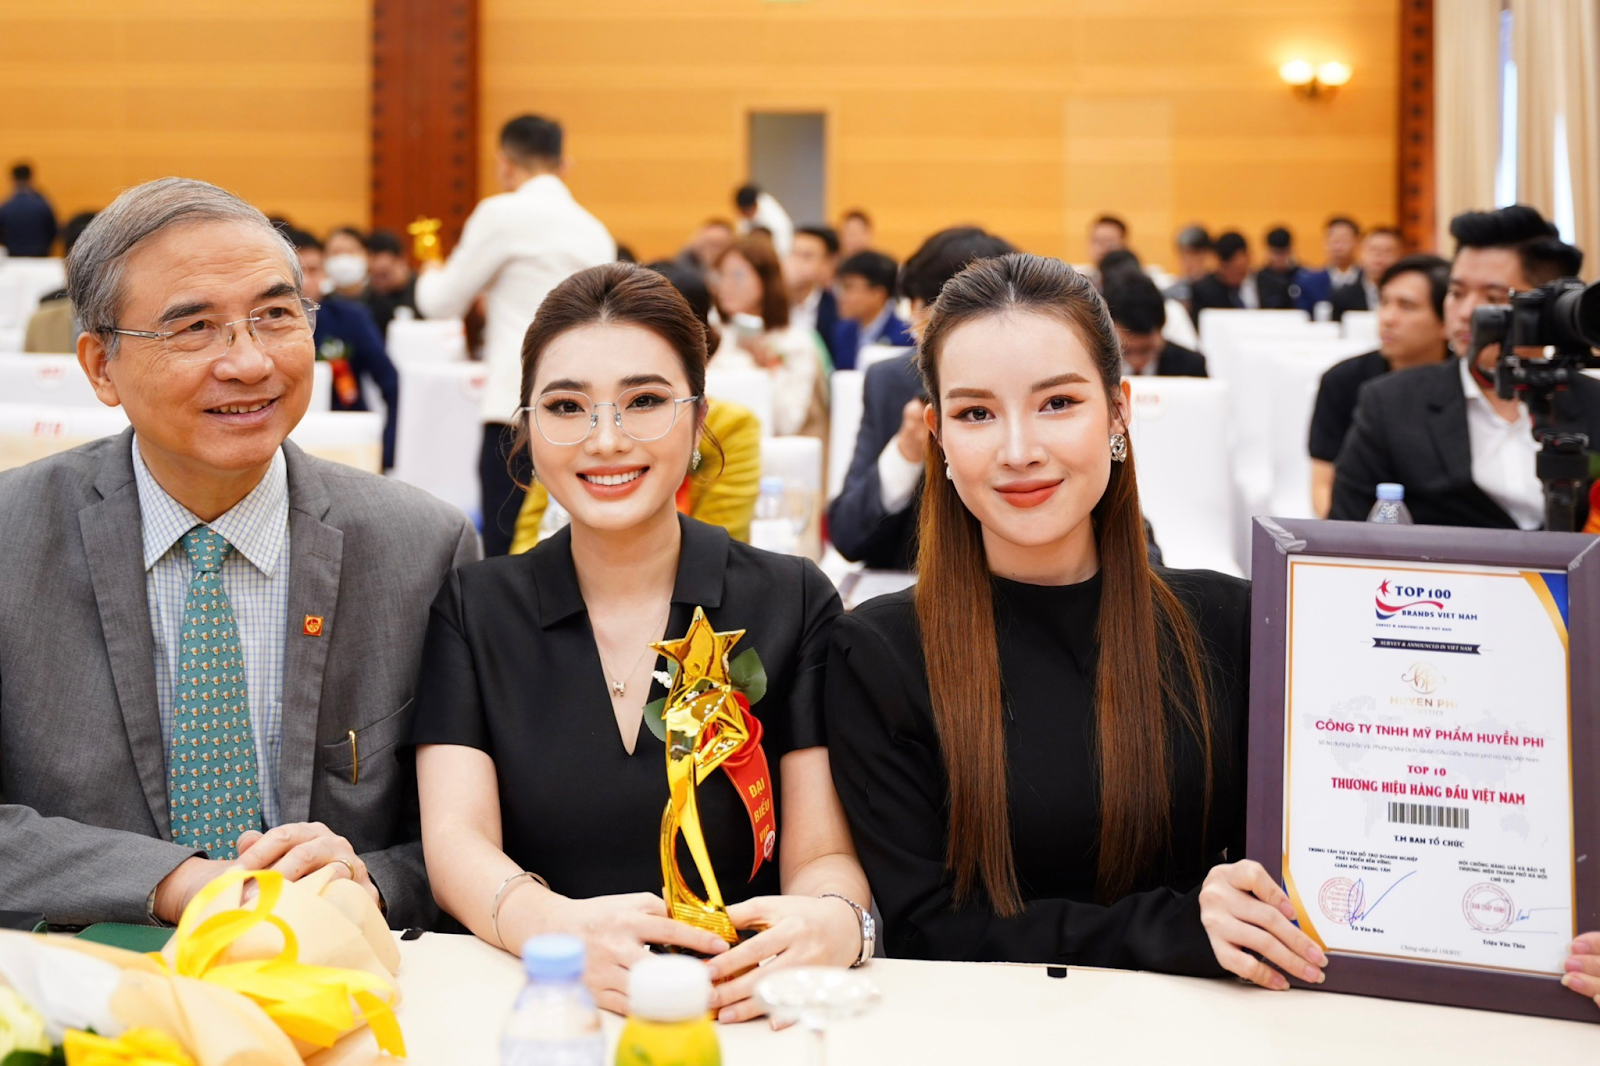 Huyền Phi Cosmetics lọt Top 10 Thương hiệu - Dịch vụ Uy tín hàng đầu Việt Nam - 4